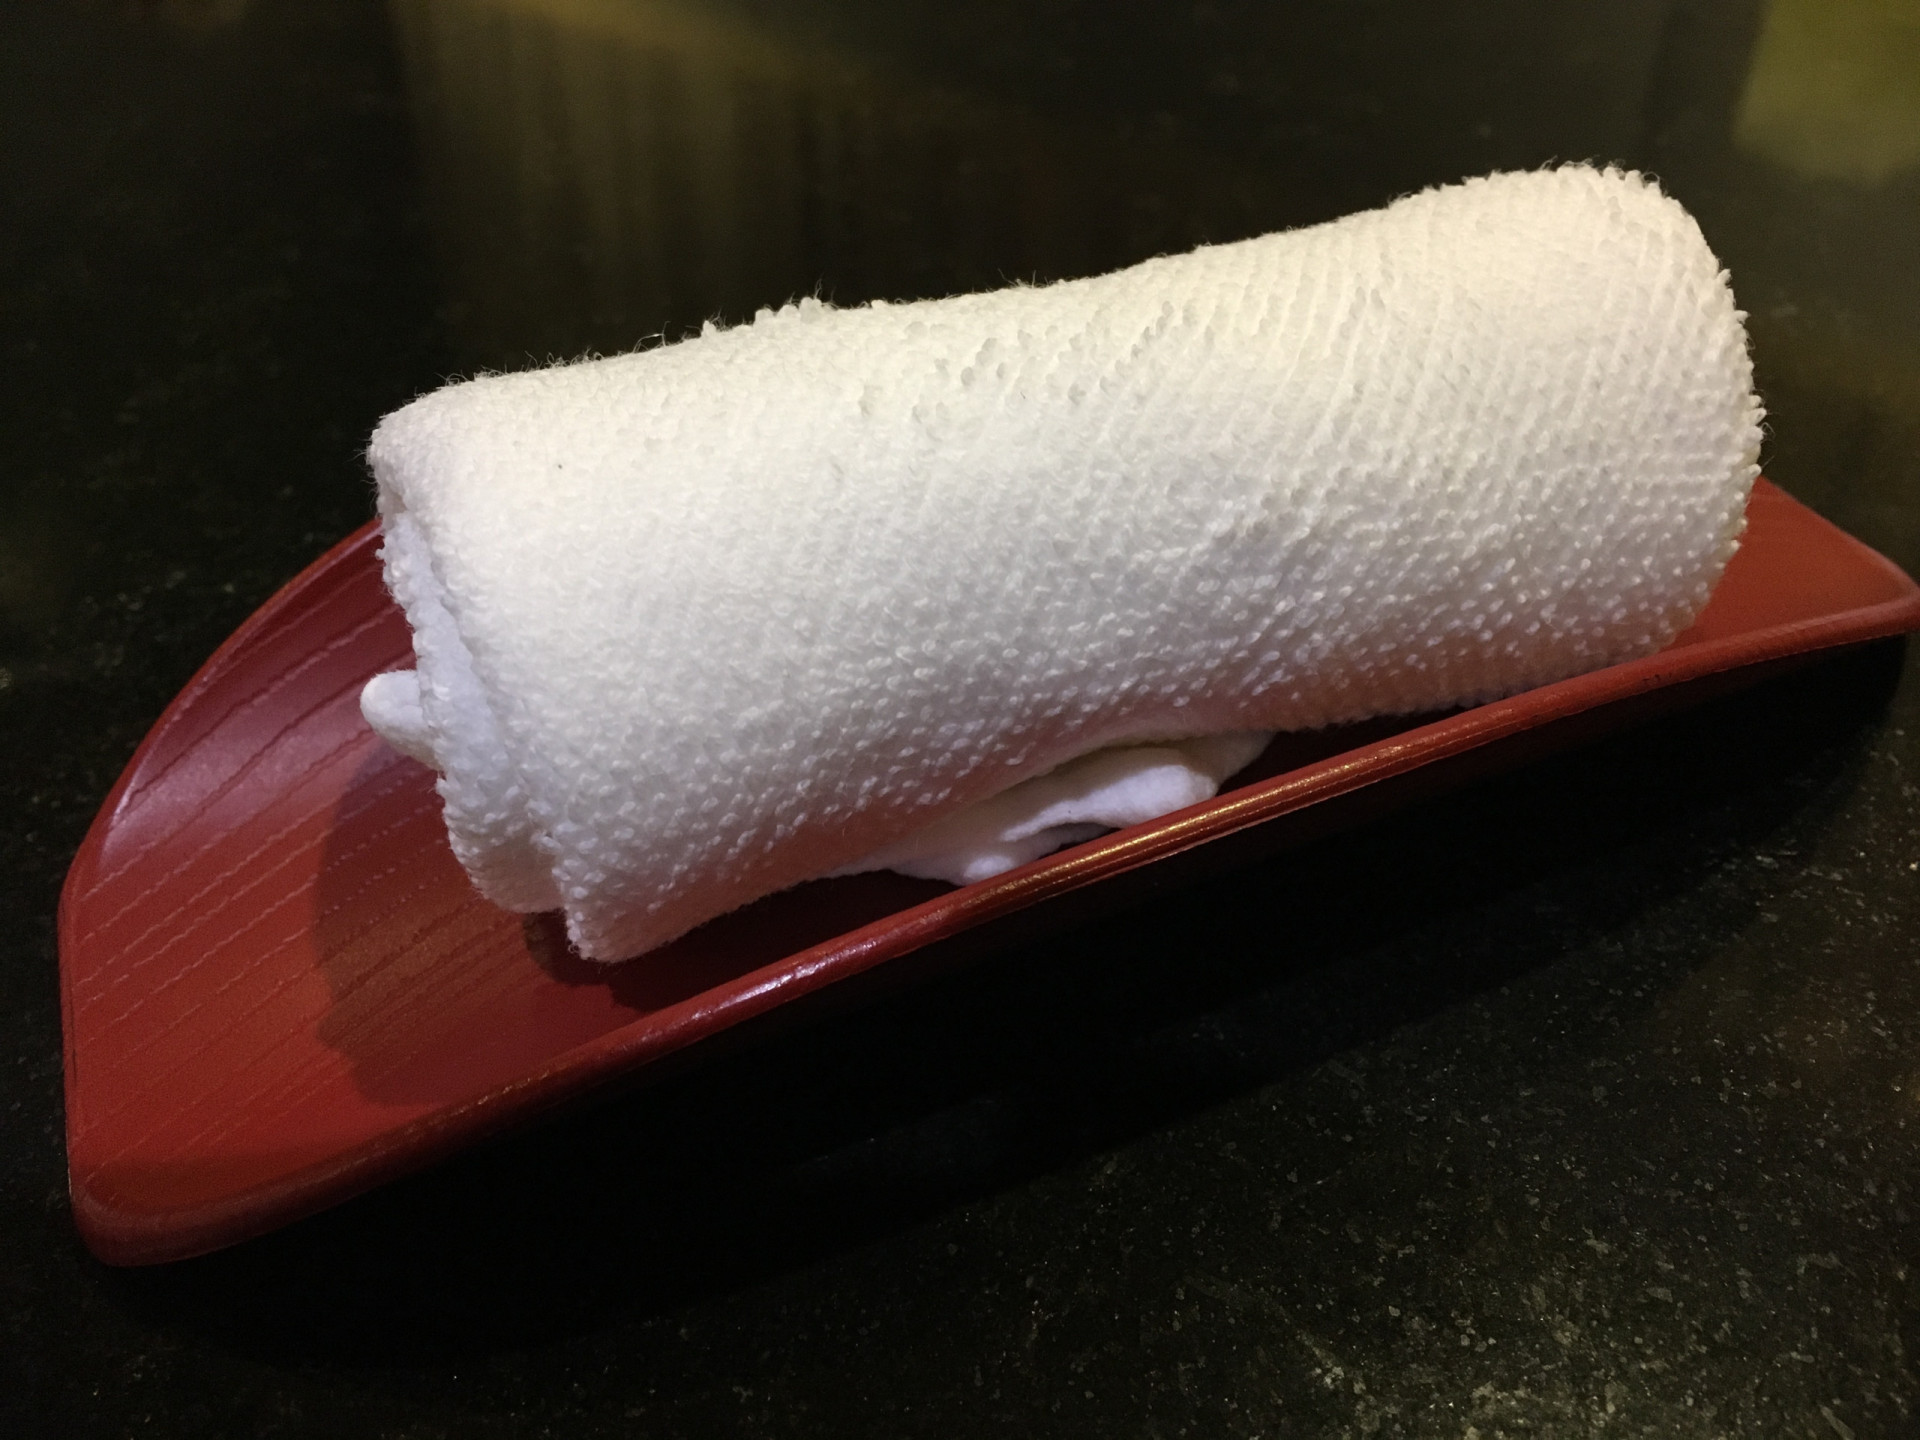 <p>Les serviettes humides se trouvent souvent dans les restaurants et sont utilisées avant les repas pour se nettoyer les mains. Ces serviettes sont connues sous le nom d'<em>oshibori</em>.</p>